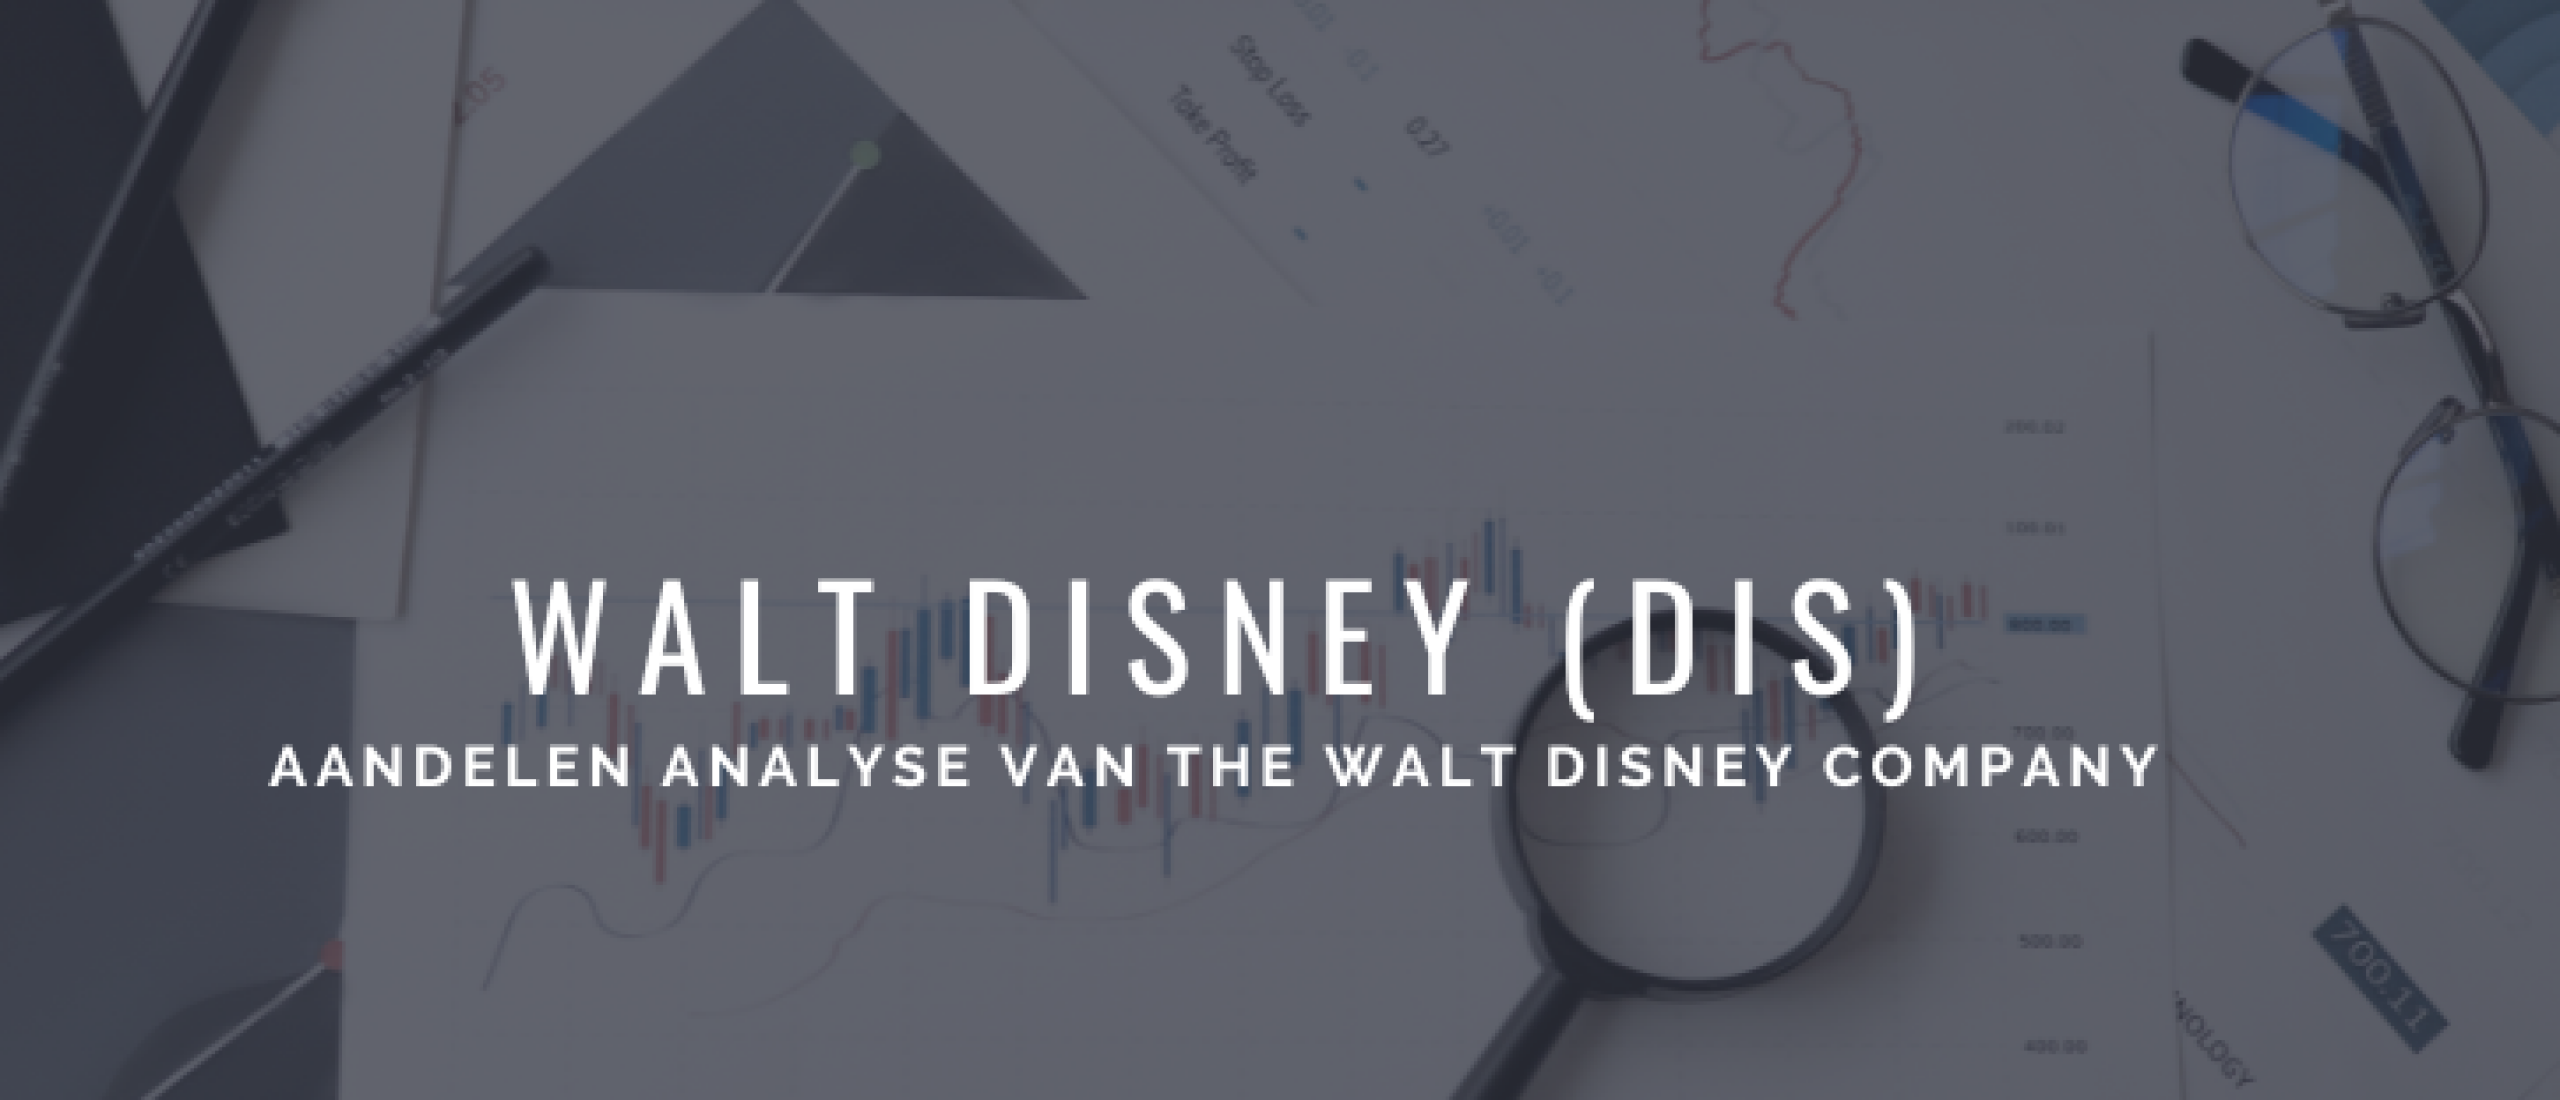 Walt Disney (DIS) Aandelen Kopen of Niet? Analyse [2022]